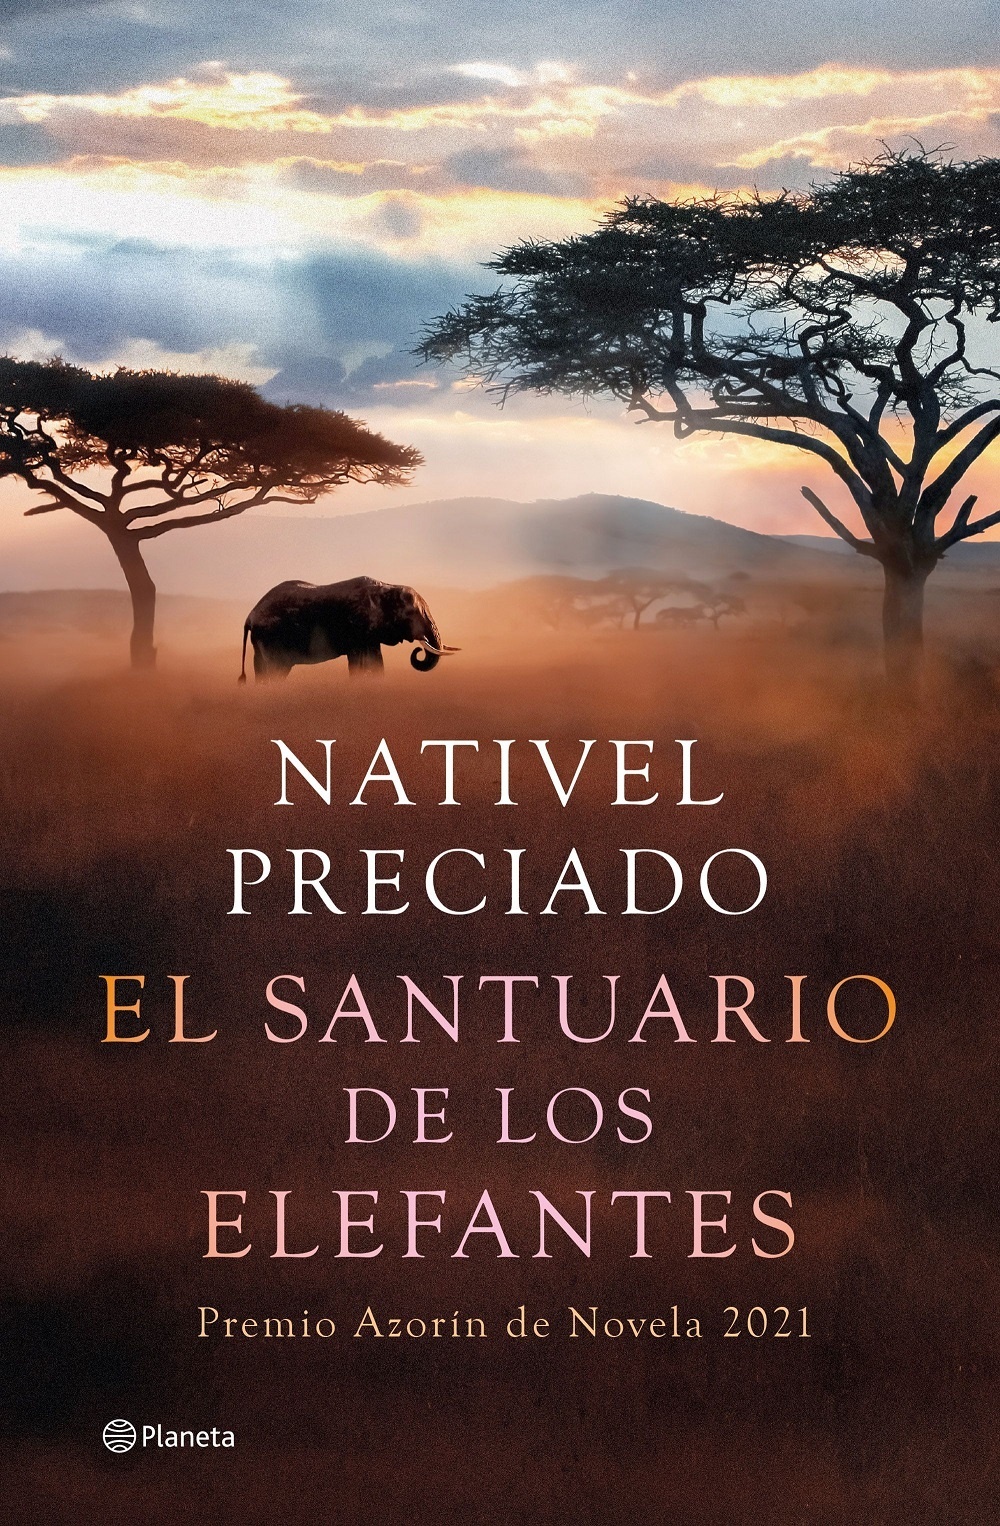 Santuario de los elefantes, El "Premio Azorín de novela 2021"